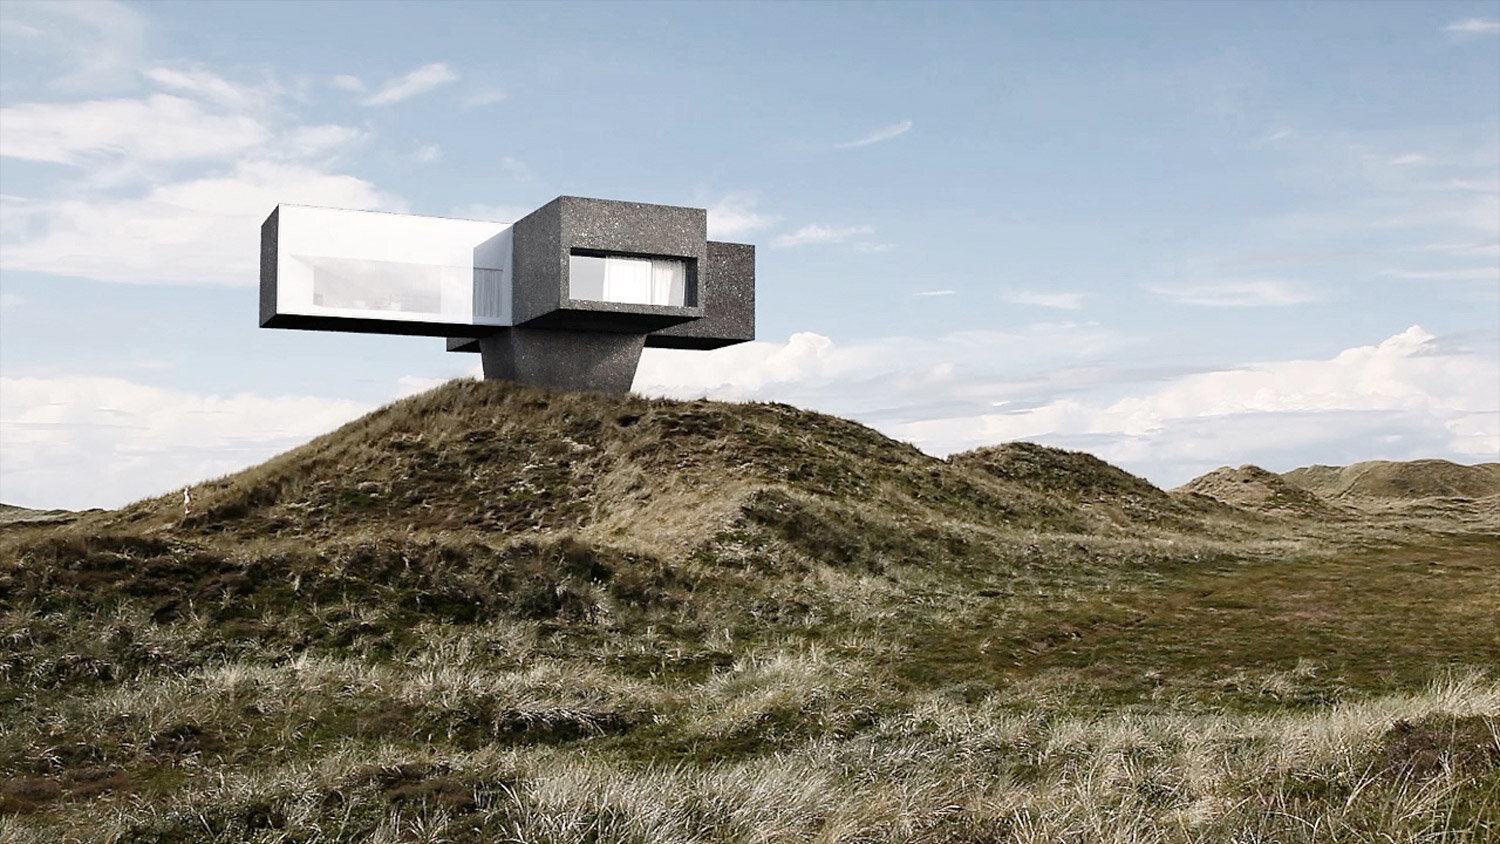 Studio-Viktor-Sørless-Dune House-Visual Atelier 8-Architecture-4.jpg